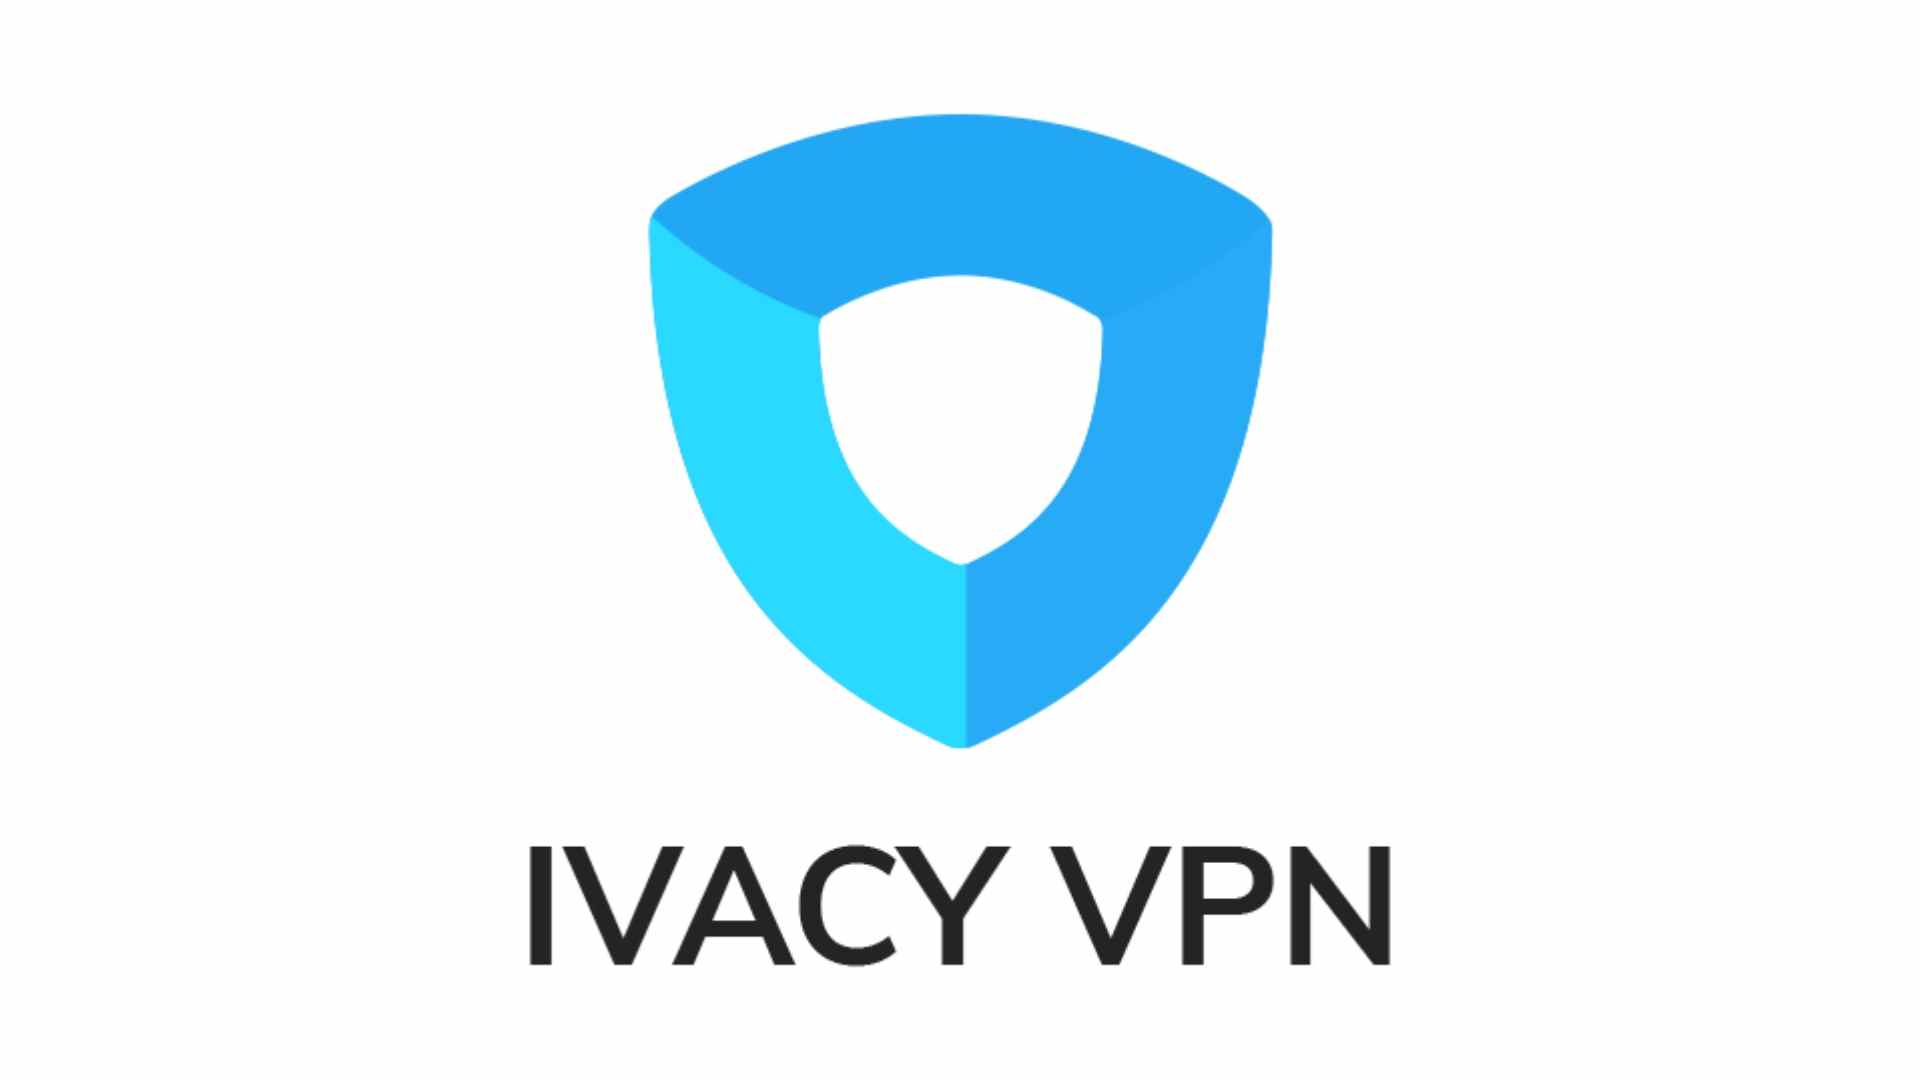 Meilleur VPN Windows 10 - Ivacy VPN.  L'image montre son logo sur un fond blanc.